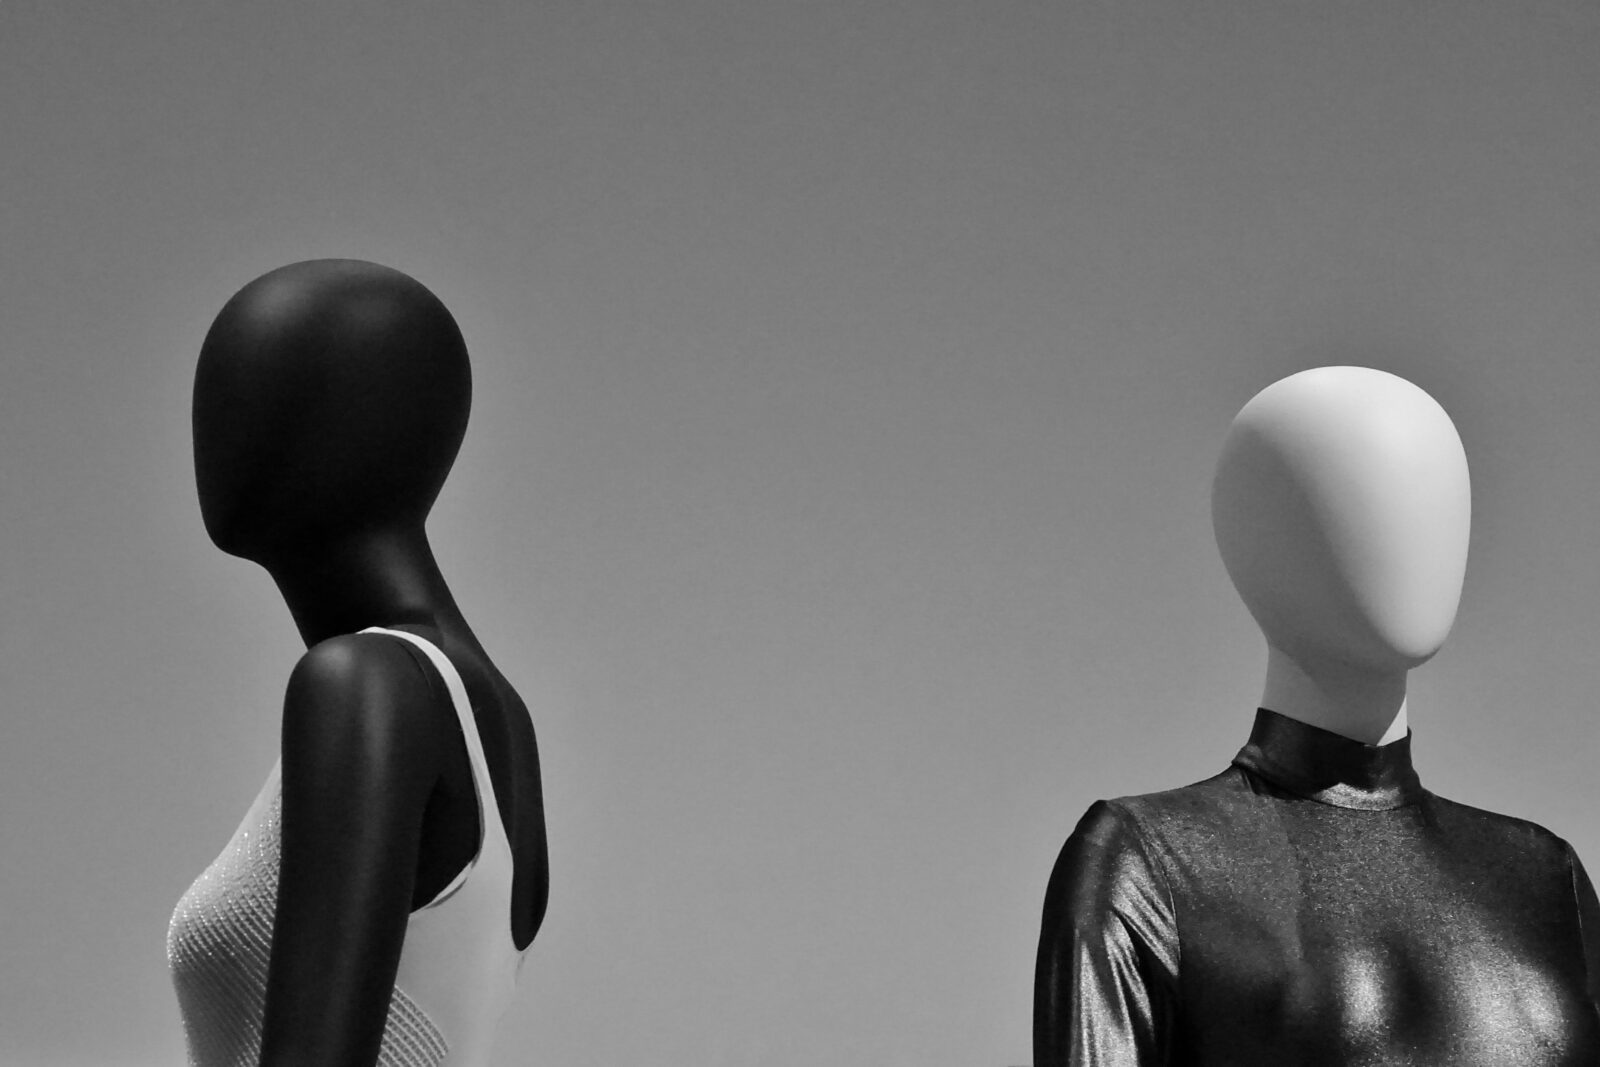 3D mannequin models with elegant dresses